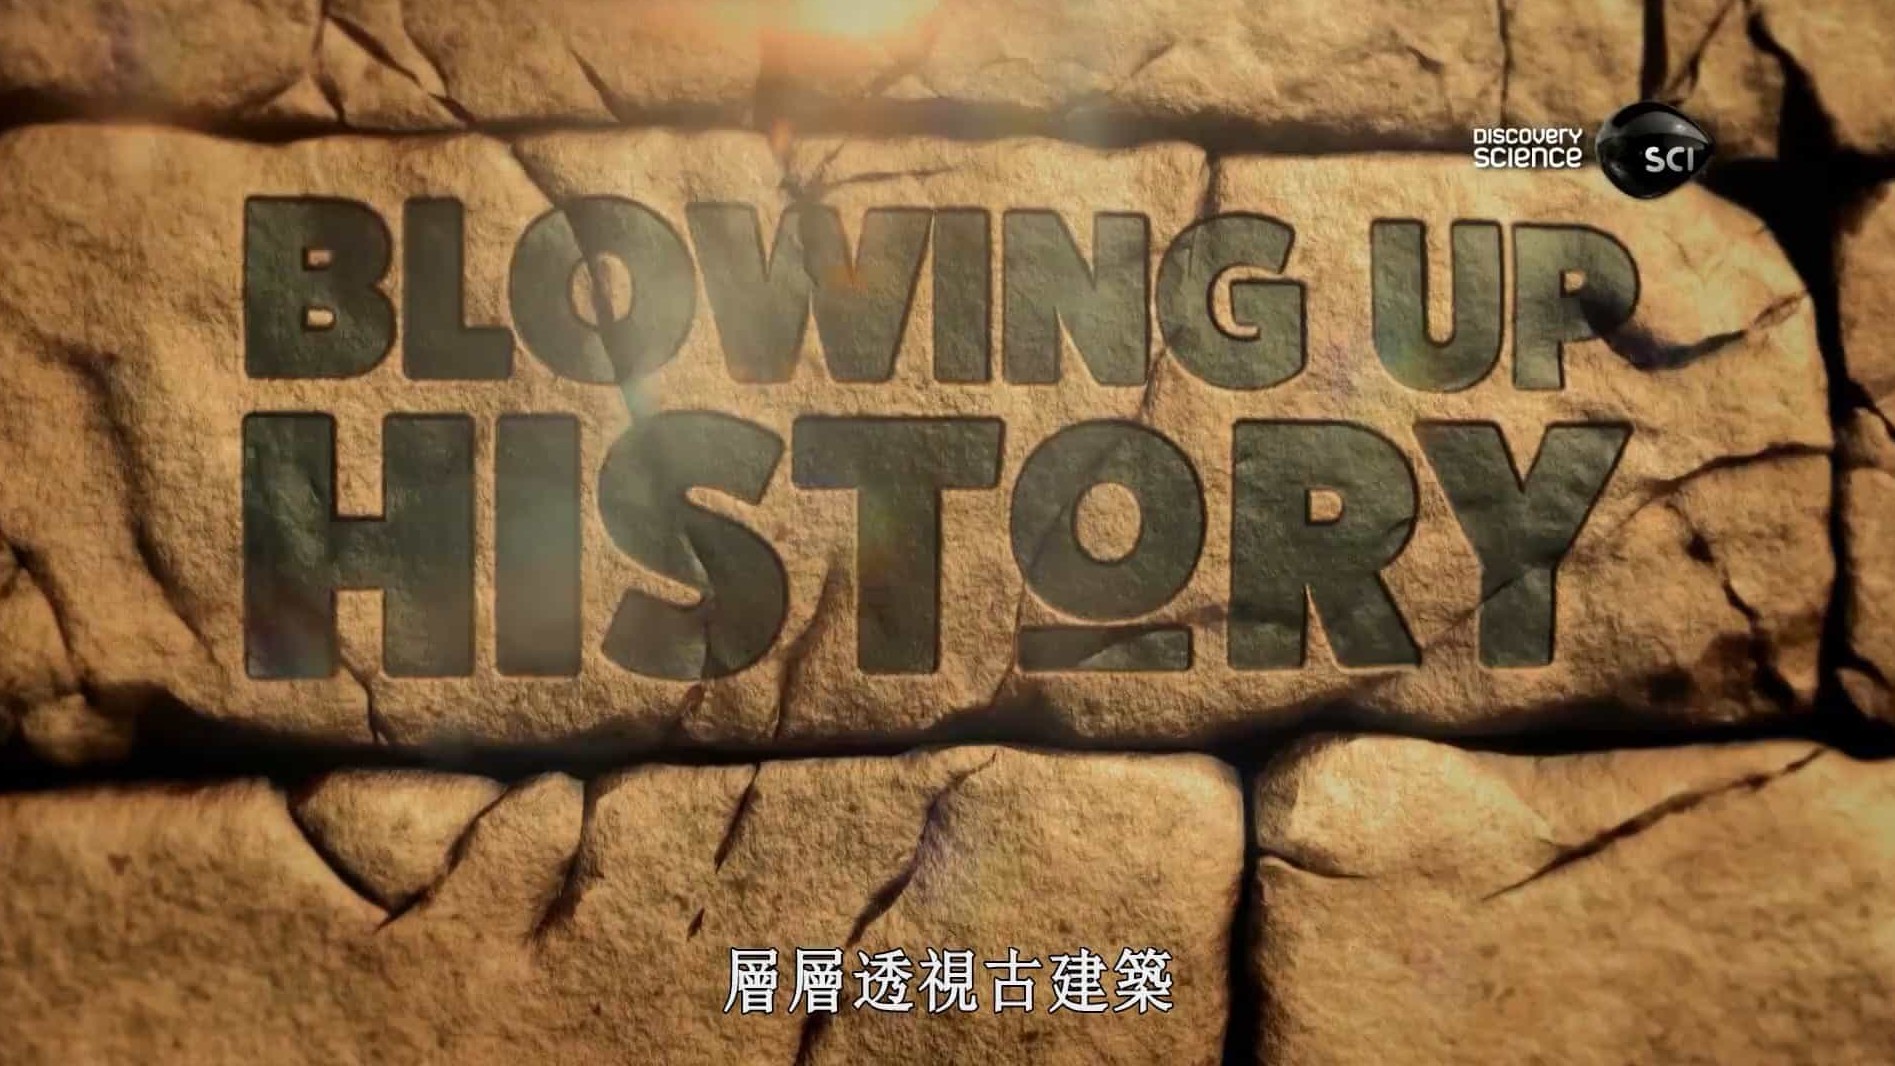 探索频道/考古系列《层层透视古建筑 Blowing Up History》第1-3季 英语英字 1080P高清下载